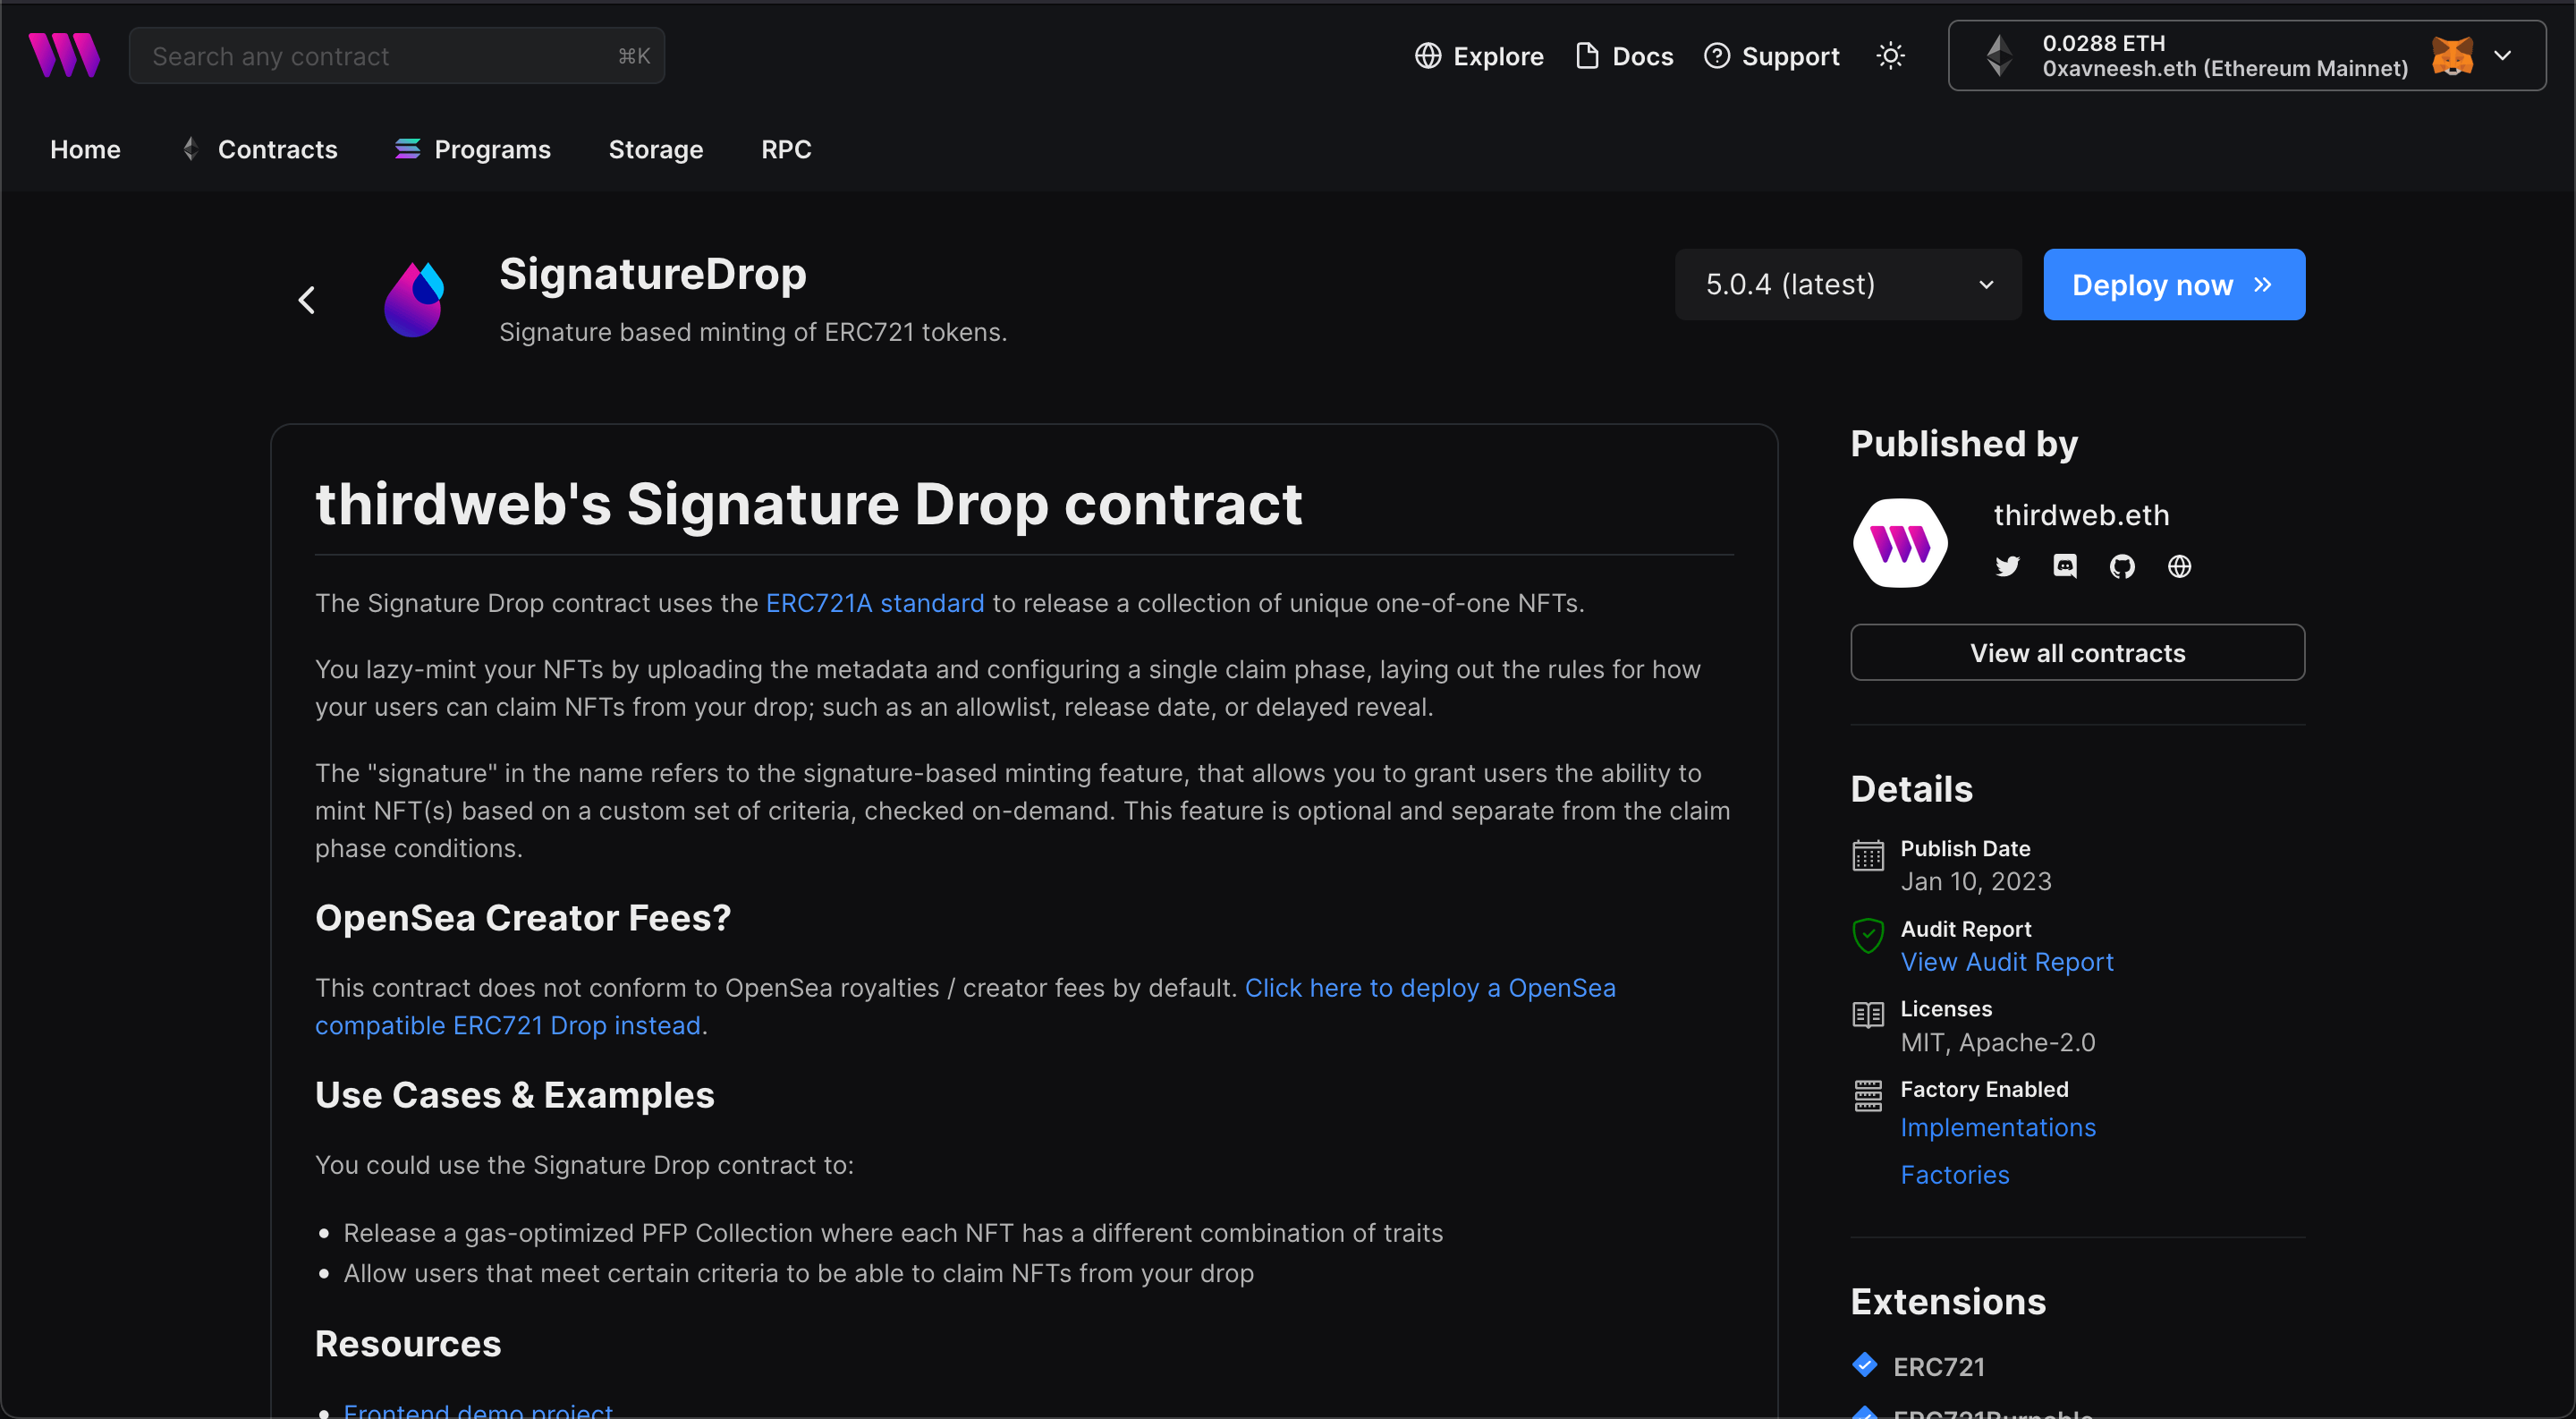 thirdweb's Signature Drop Contract